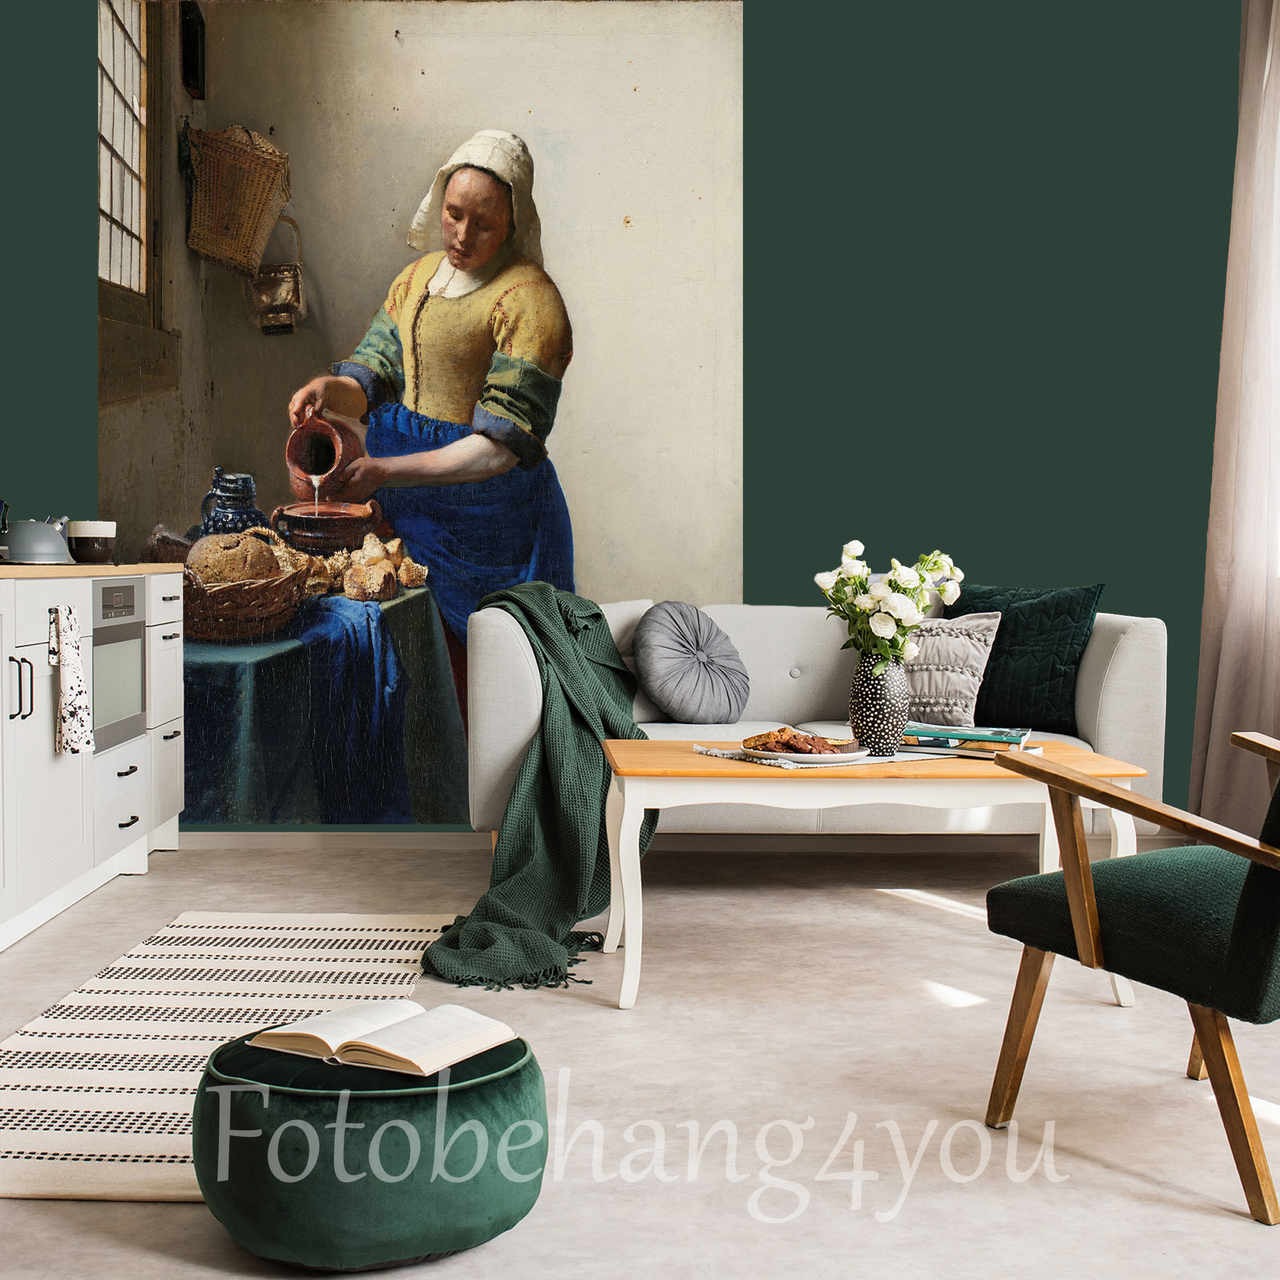 motief bundel Vijftig Het Melkmeisje van Vermeer fotobehang - Fotobehang4you